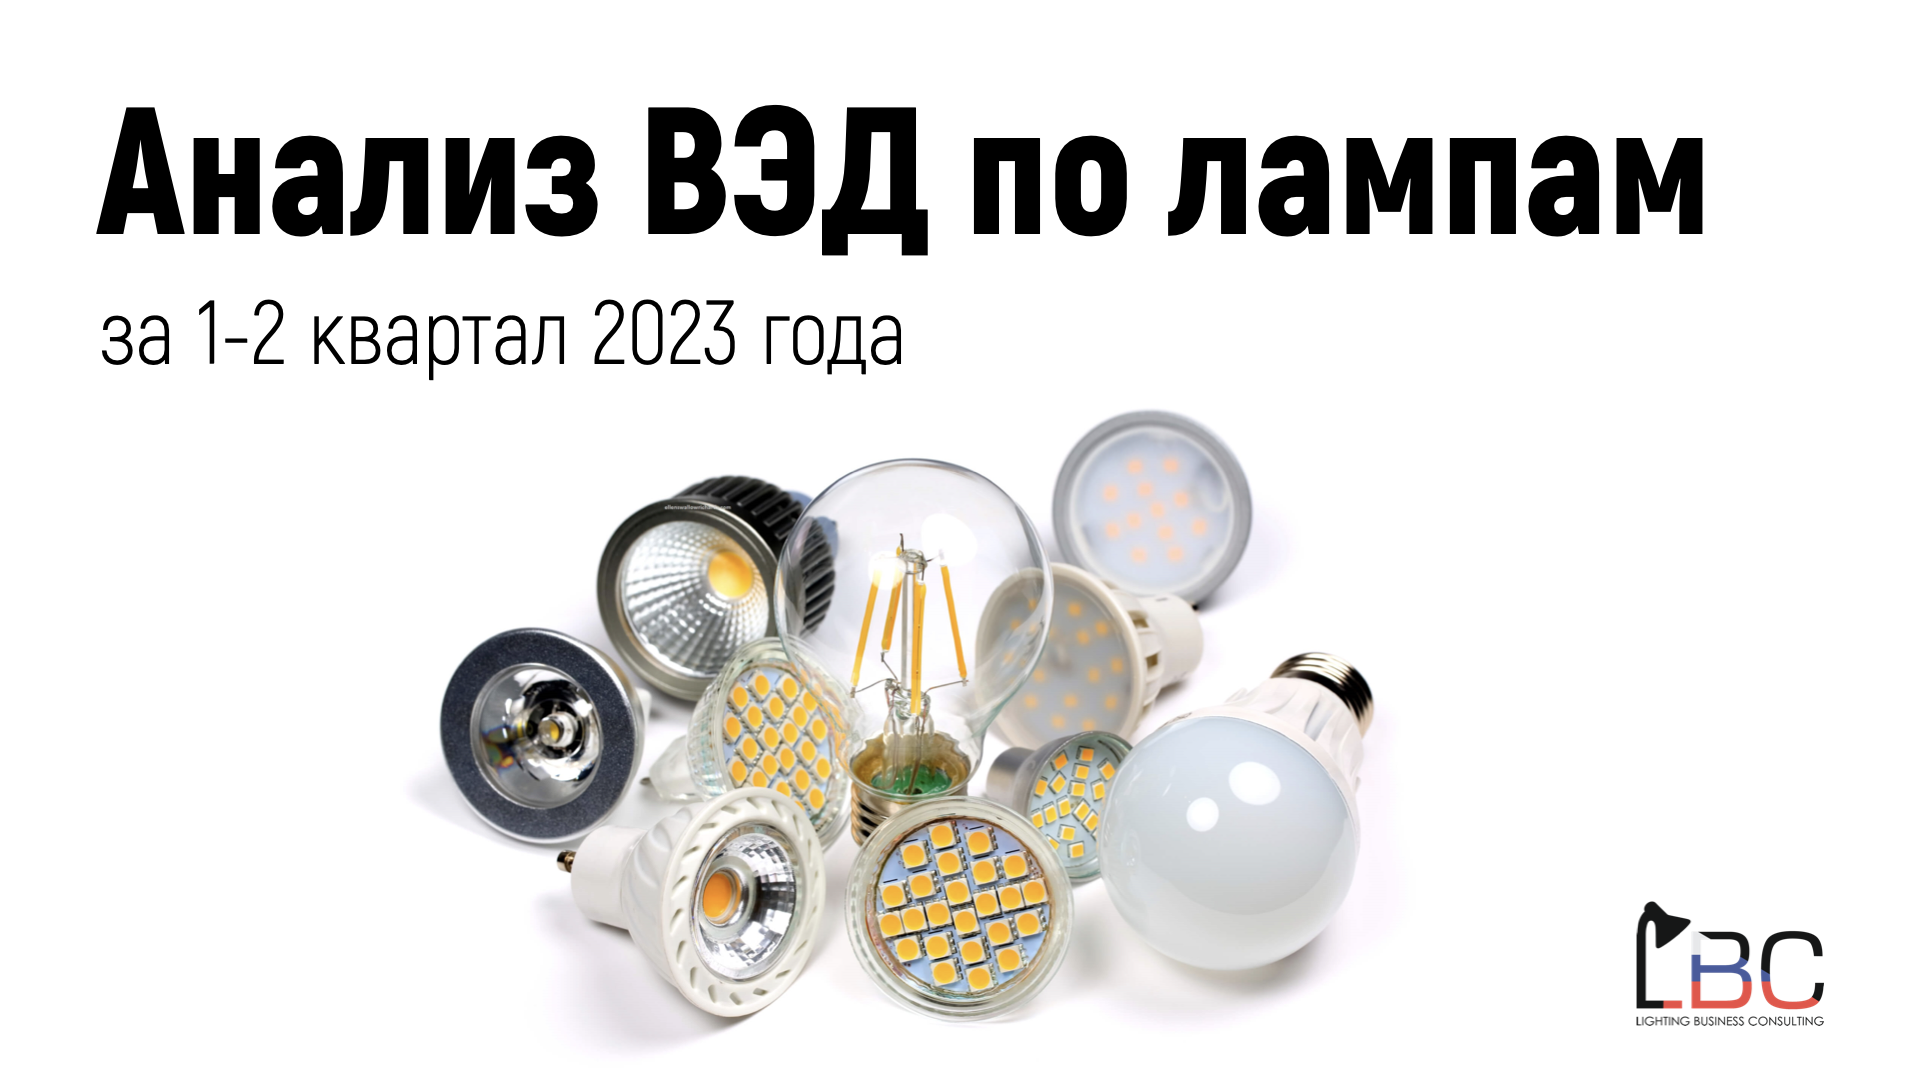 Подведены итоги по импорту ламп в Россию в 1-2 кв. 2023 г. 